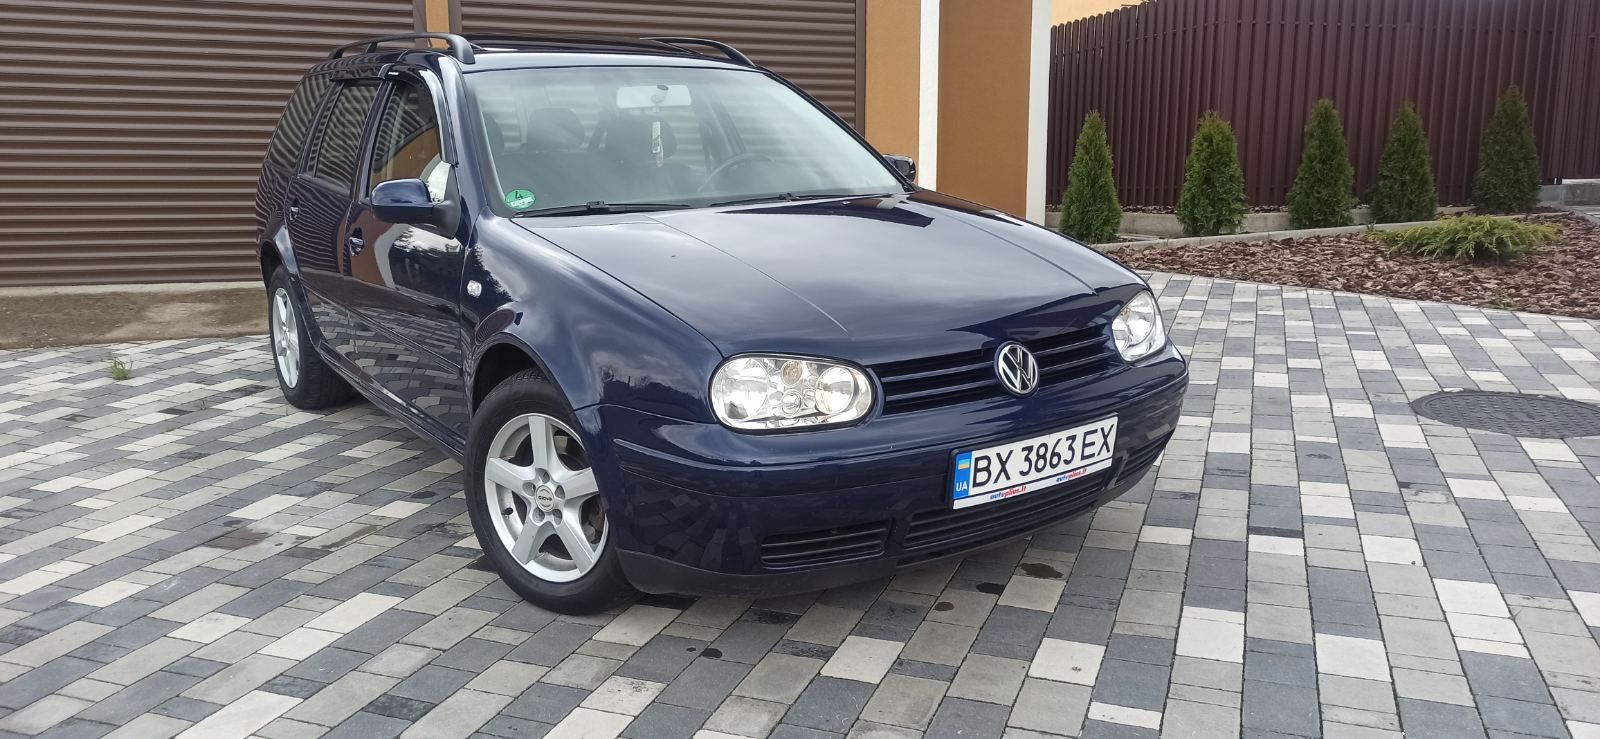 Volkswagen Golf 2003.